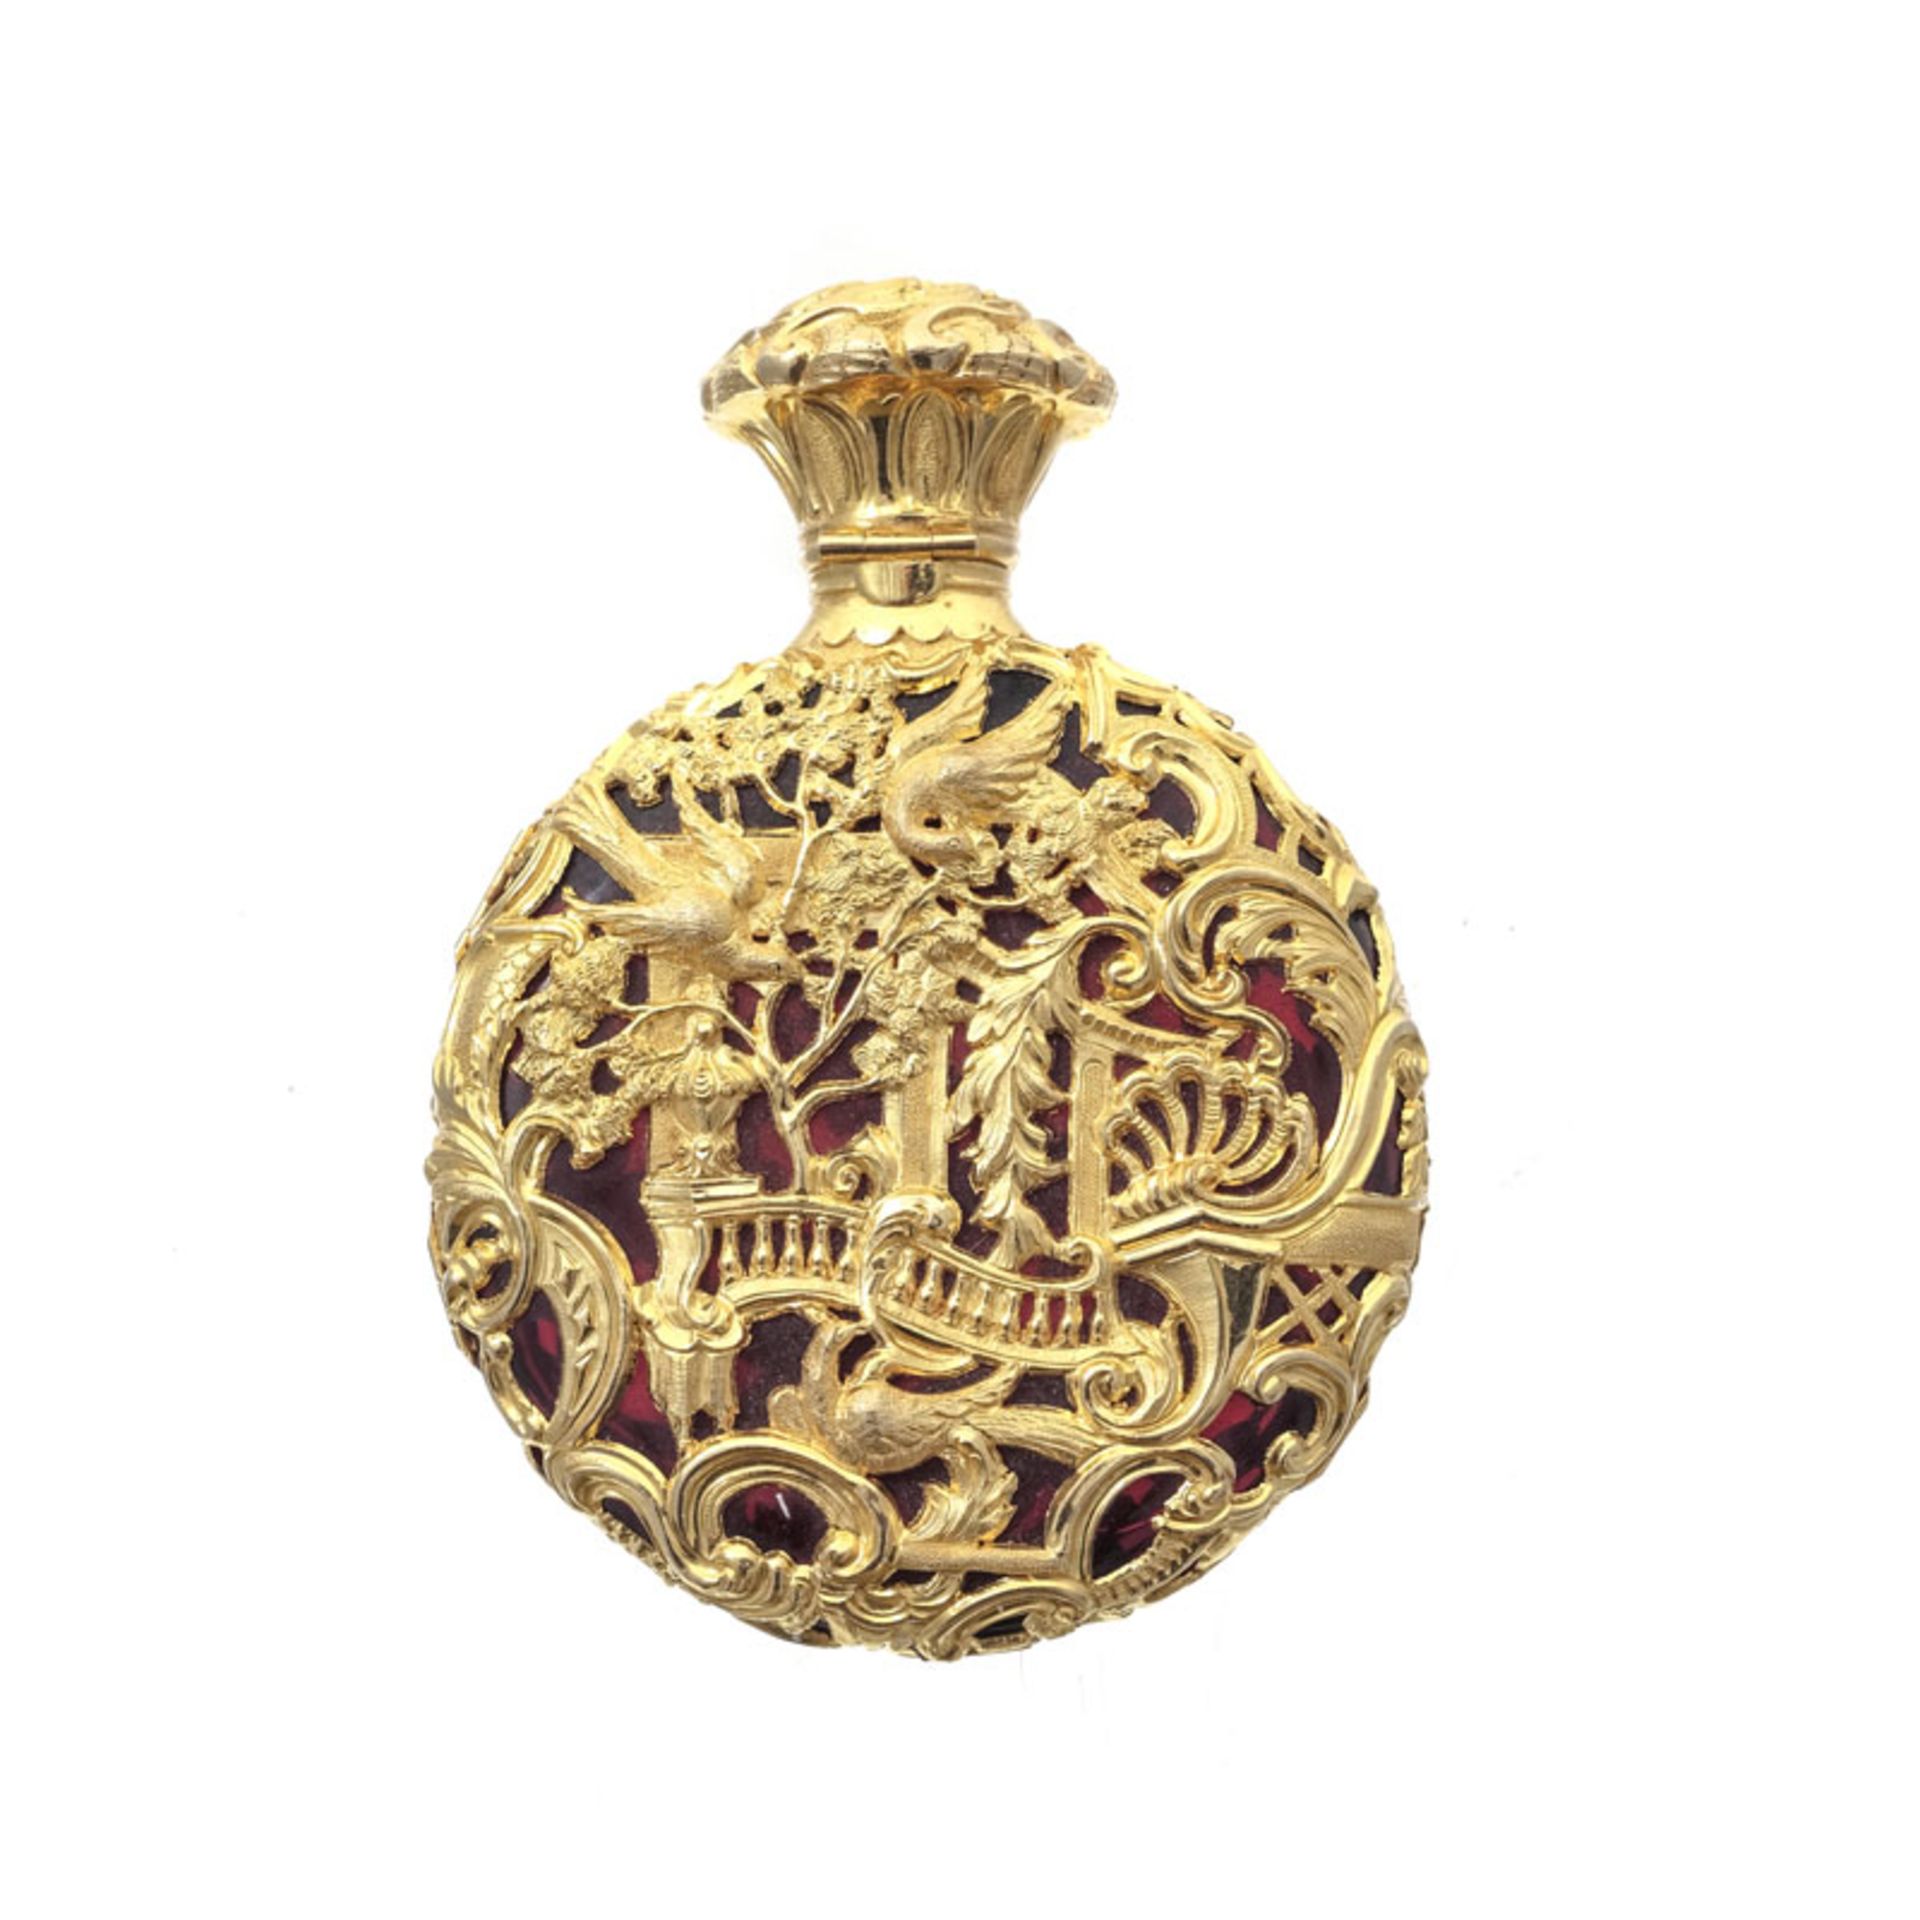 Flacon à parfum en or ajouré au décor rocaille, récipient en verre rouge, h. 7,8 cm - Image 2 of 4